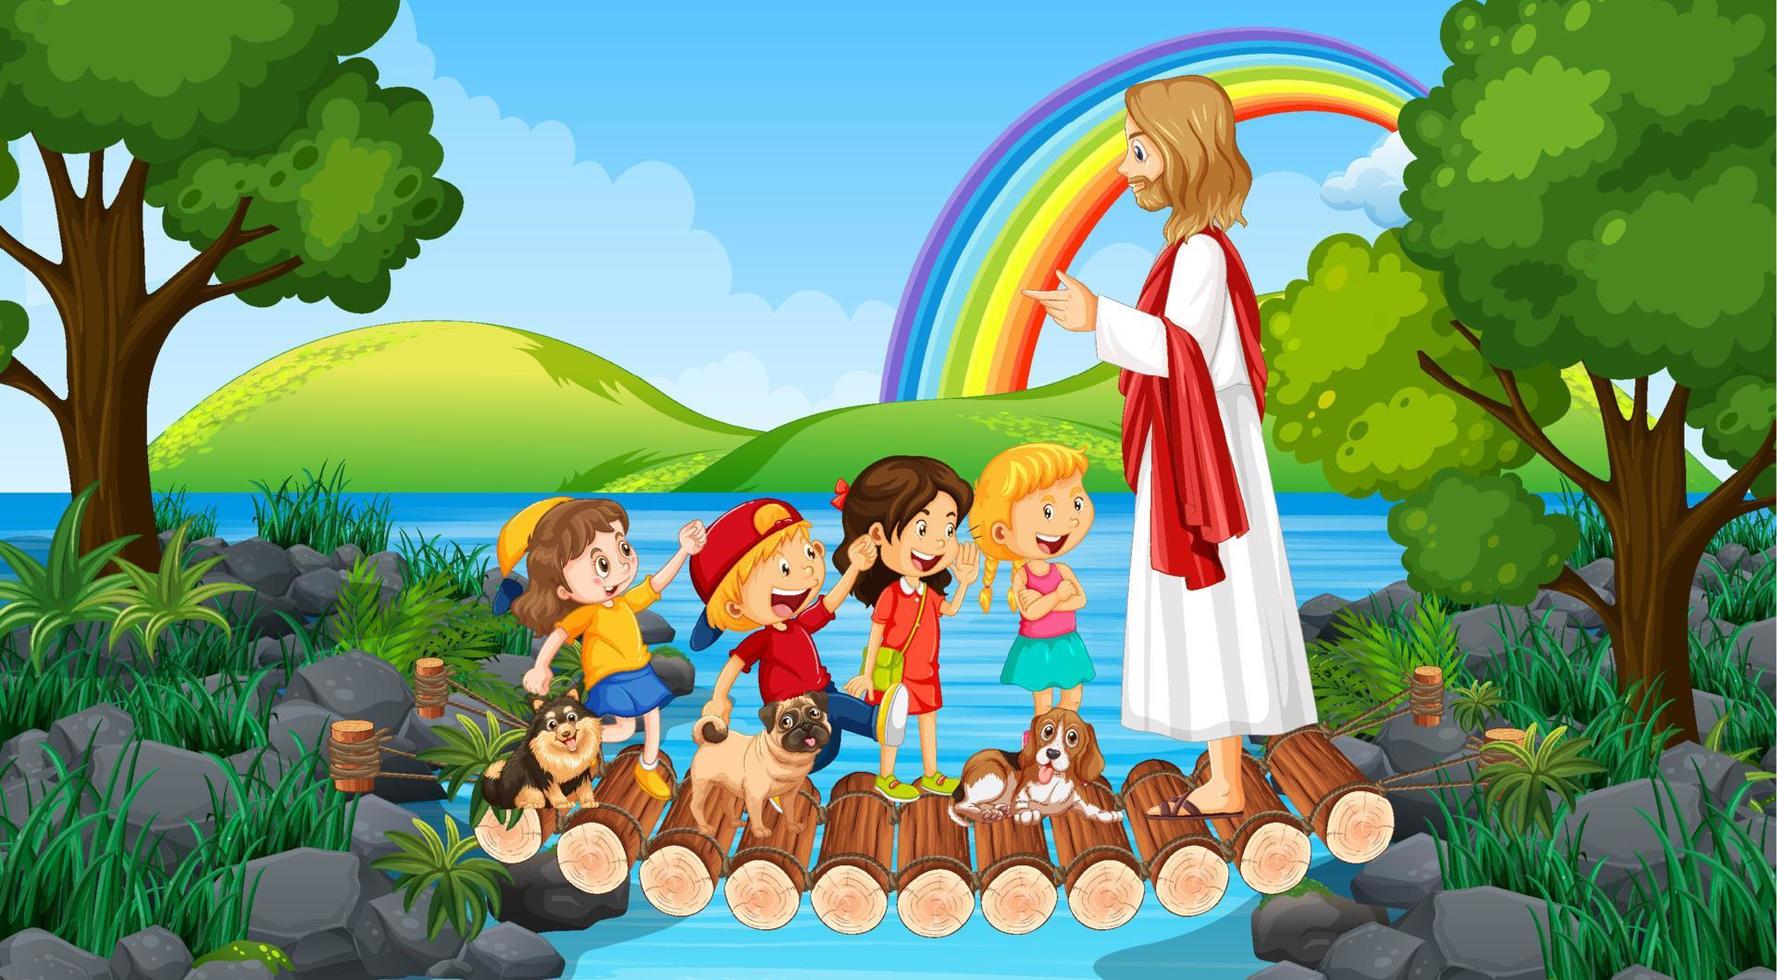 jesus e crianças no parque vetor